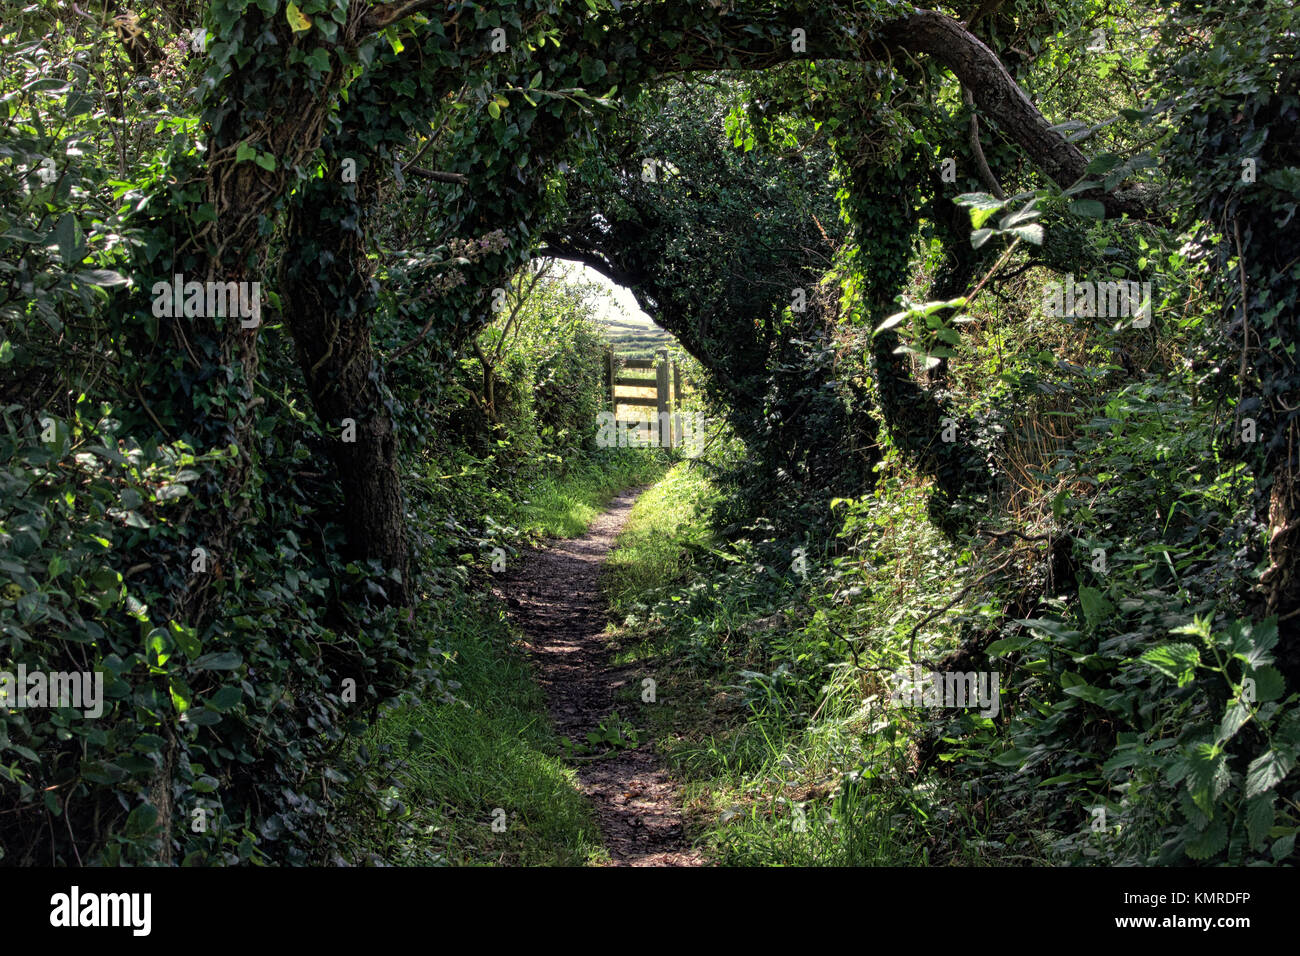 Ein Fußweg mit einem Tunnel der Bäume mit einem sonnendurchfluteten Tor am Ende Stockfoto